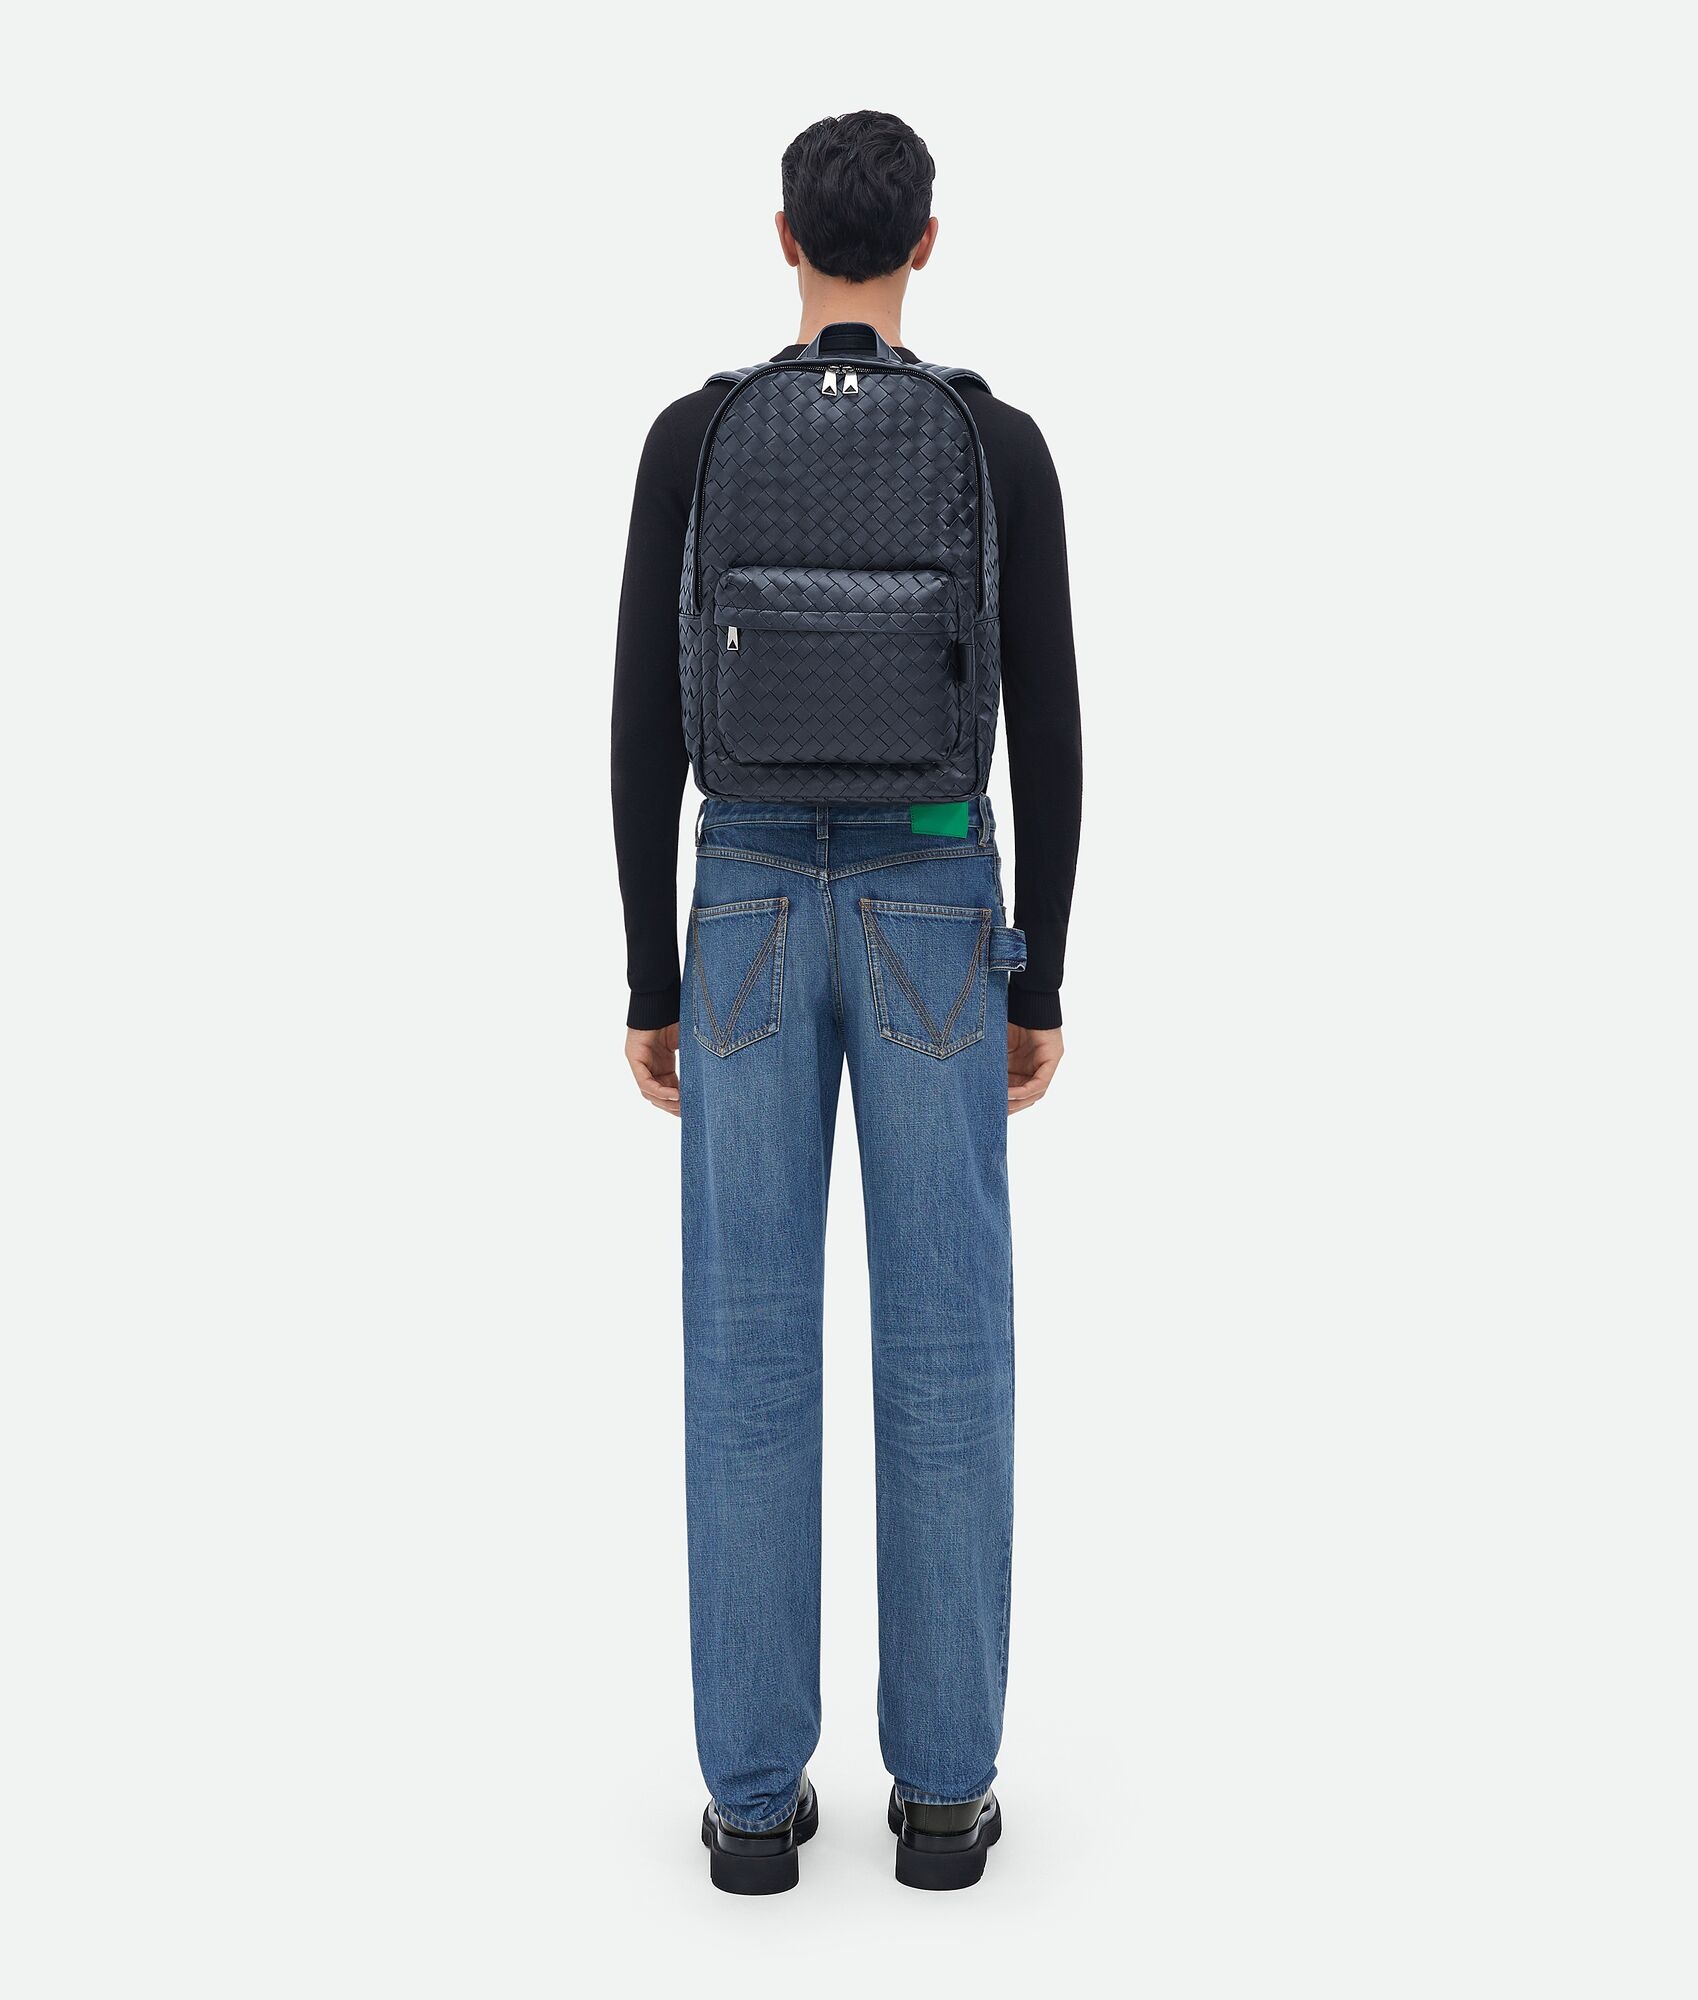 medium classic intrecciato backpack - 5